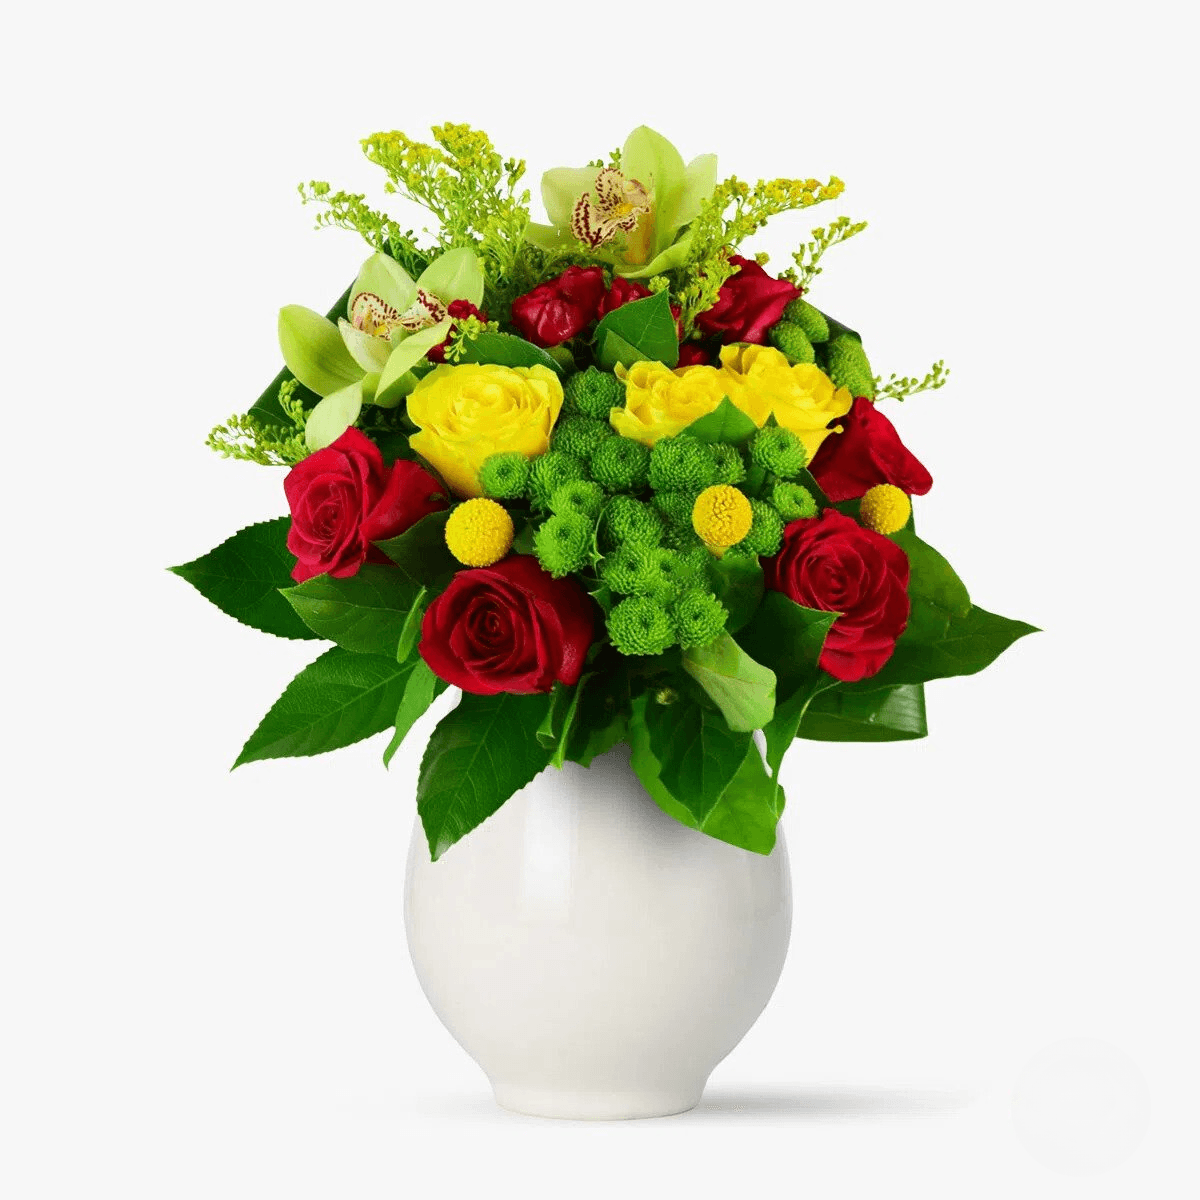 Buchet de flori cu cymbidium verde, craspedia, trandafiri rosii, santini verde Zambetul toamnei